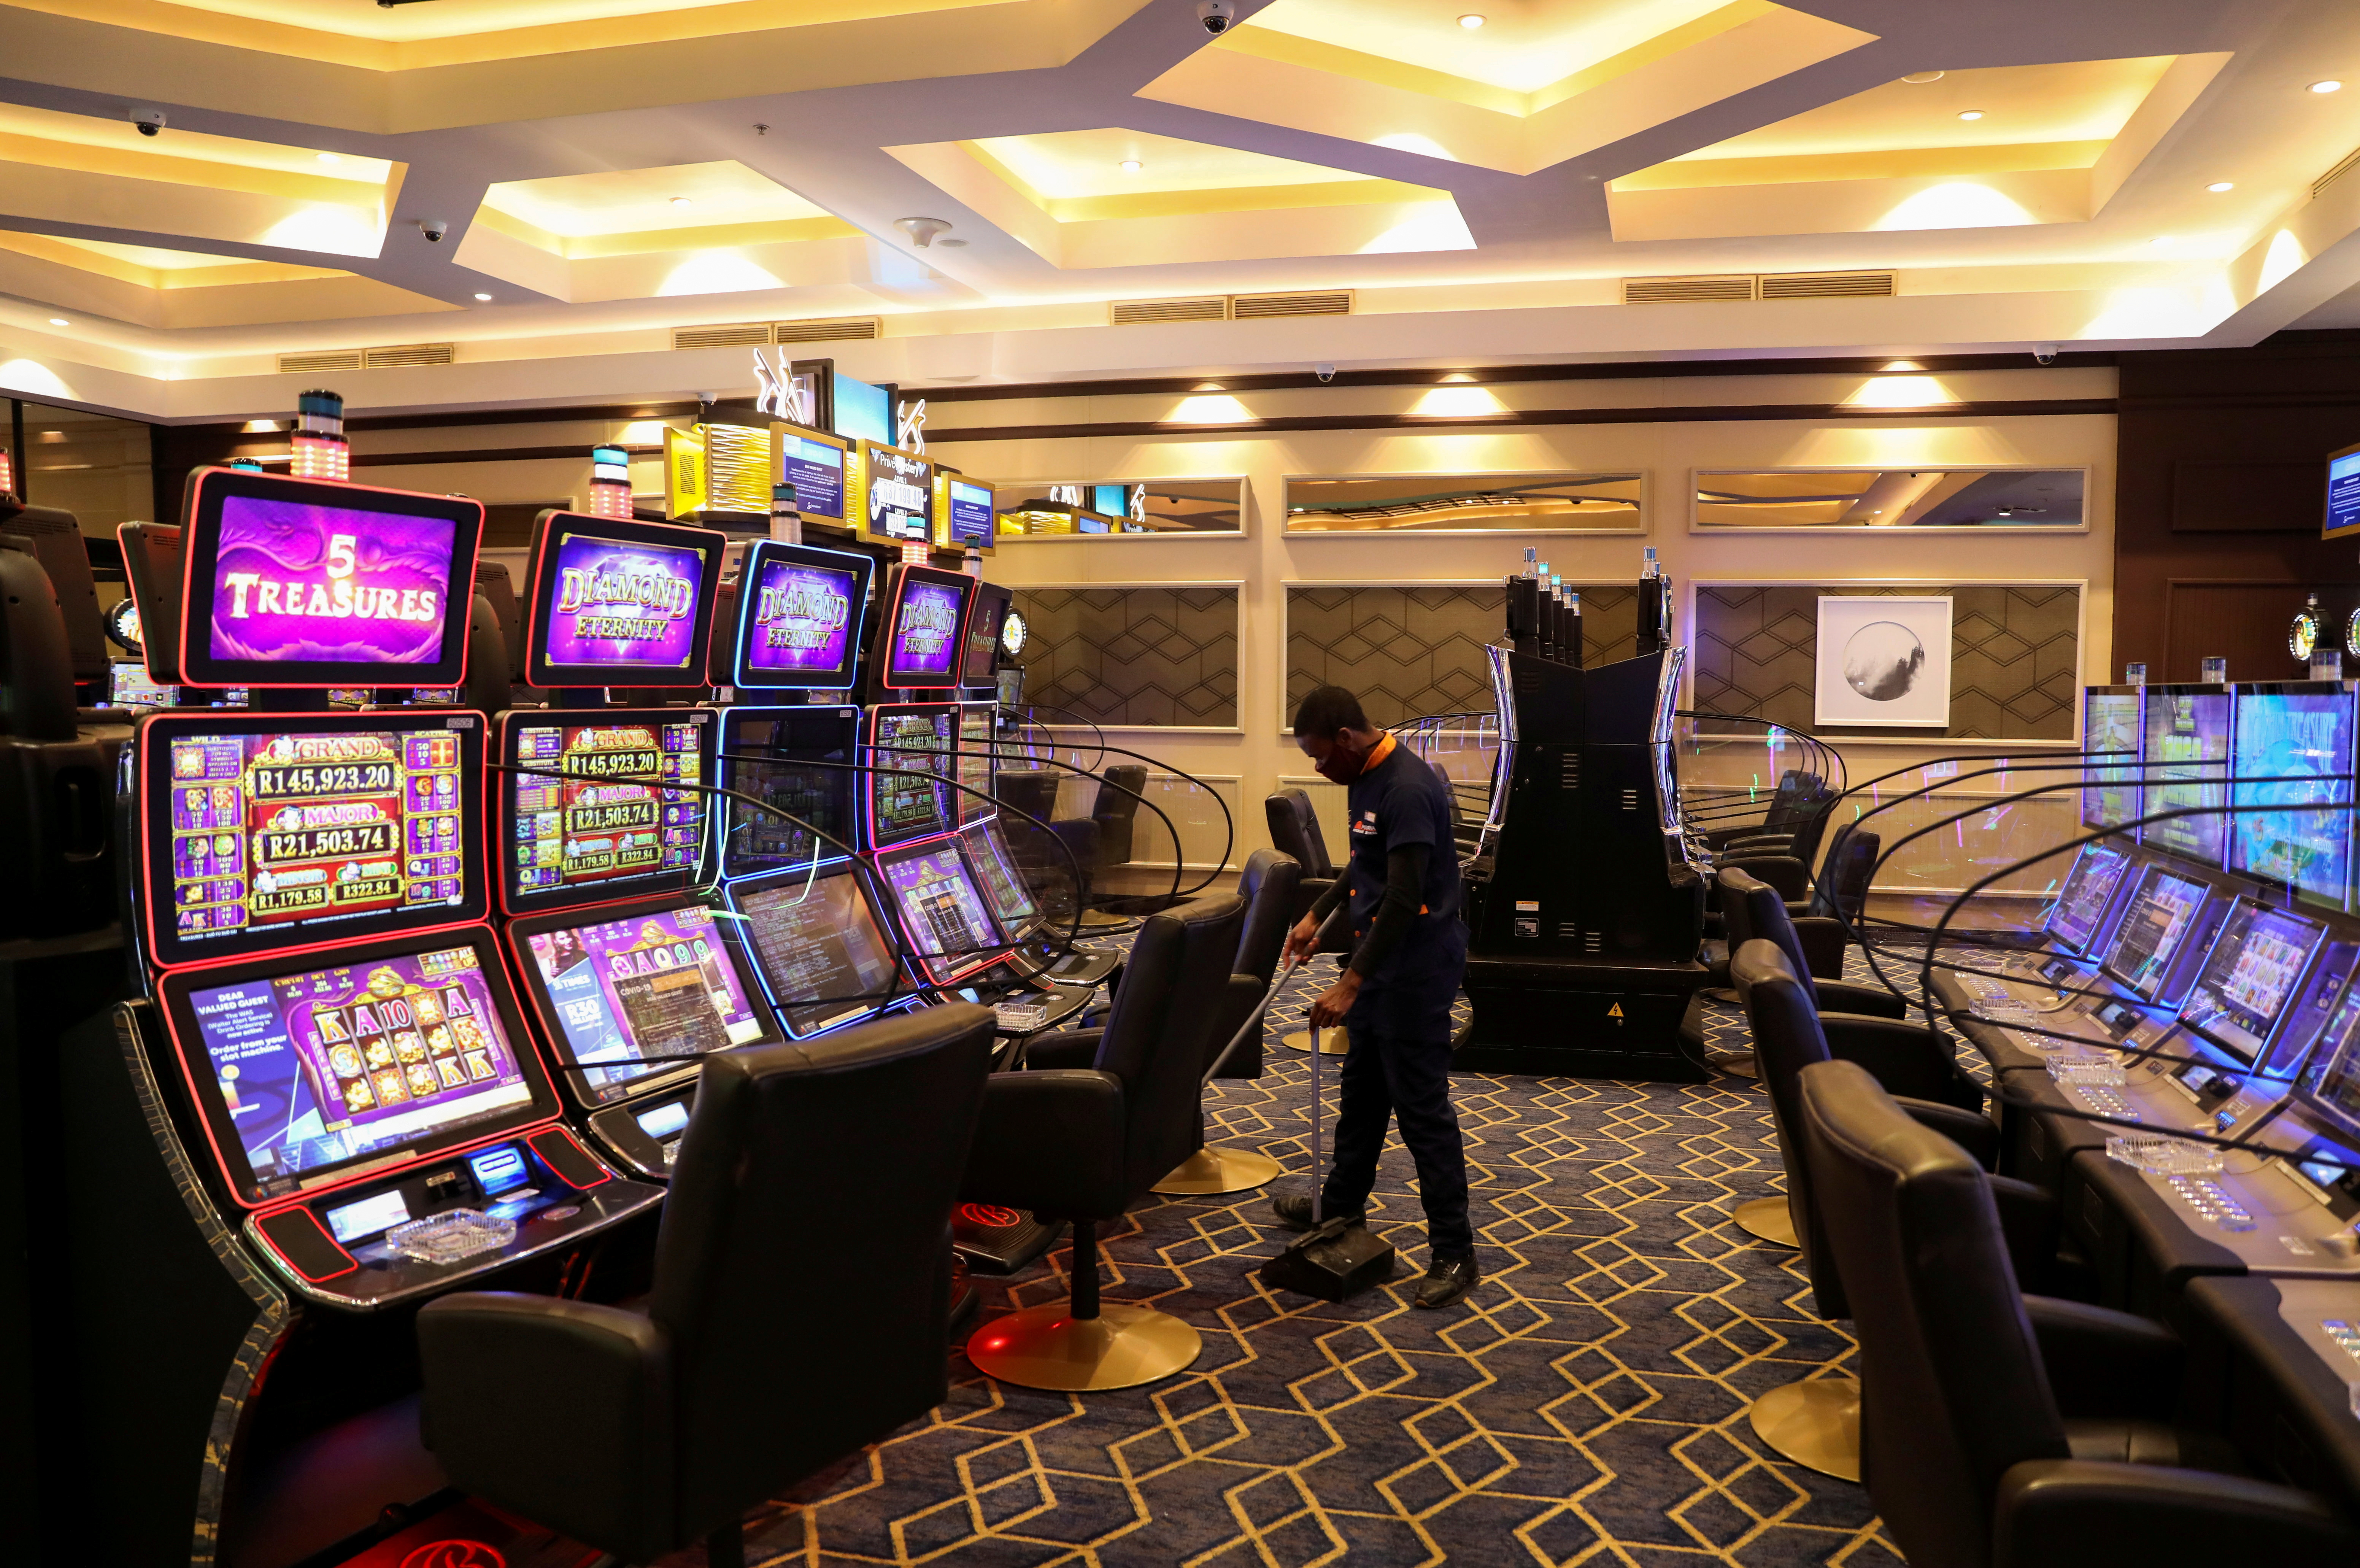 casinos chilenos online: Mantenlo simple y estúpido